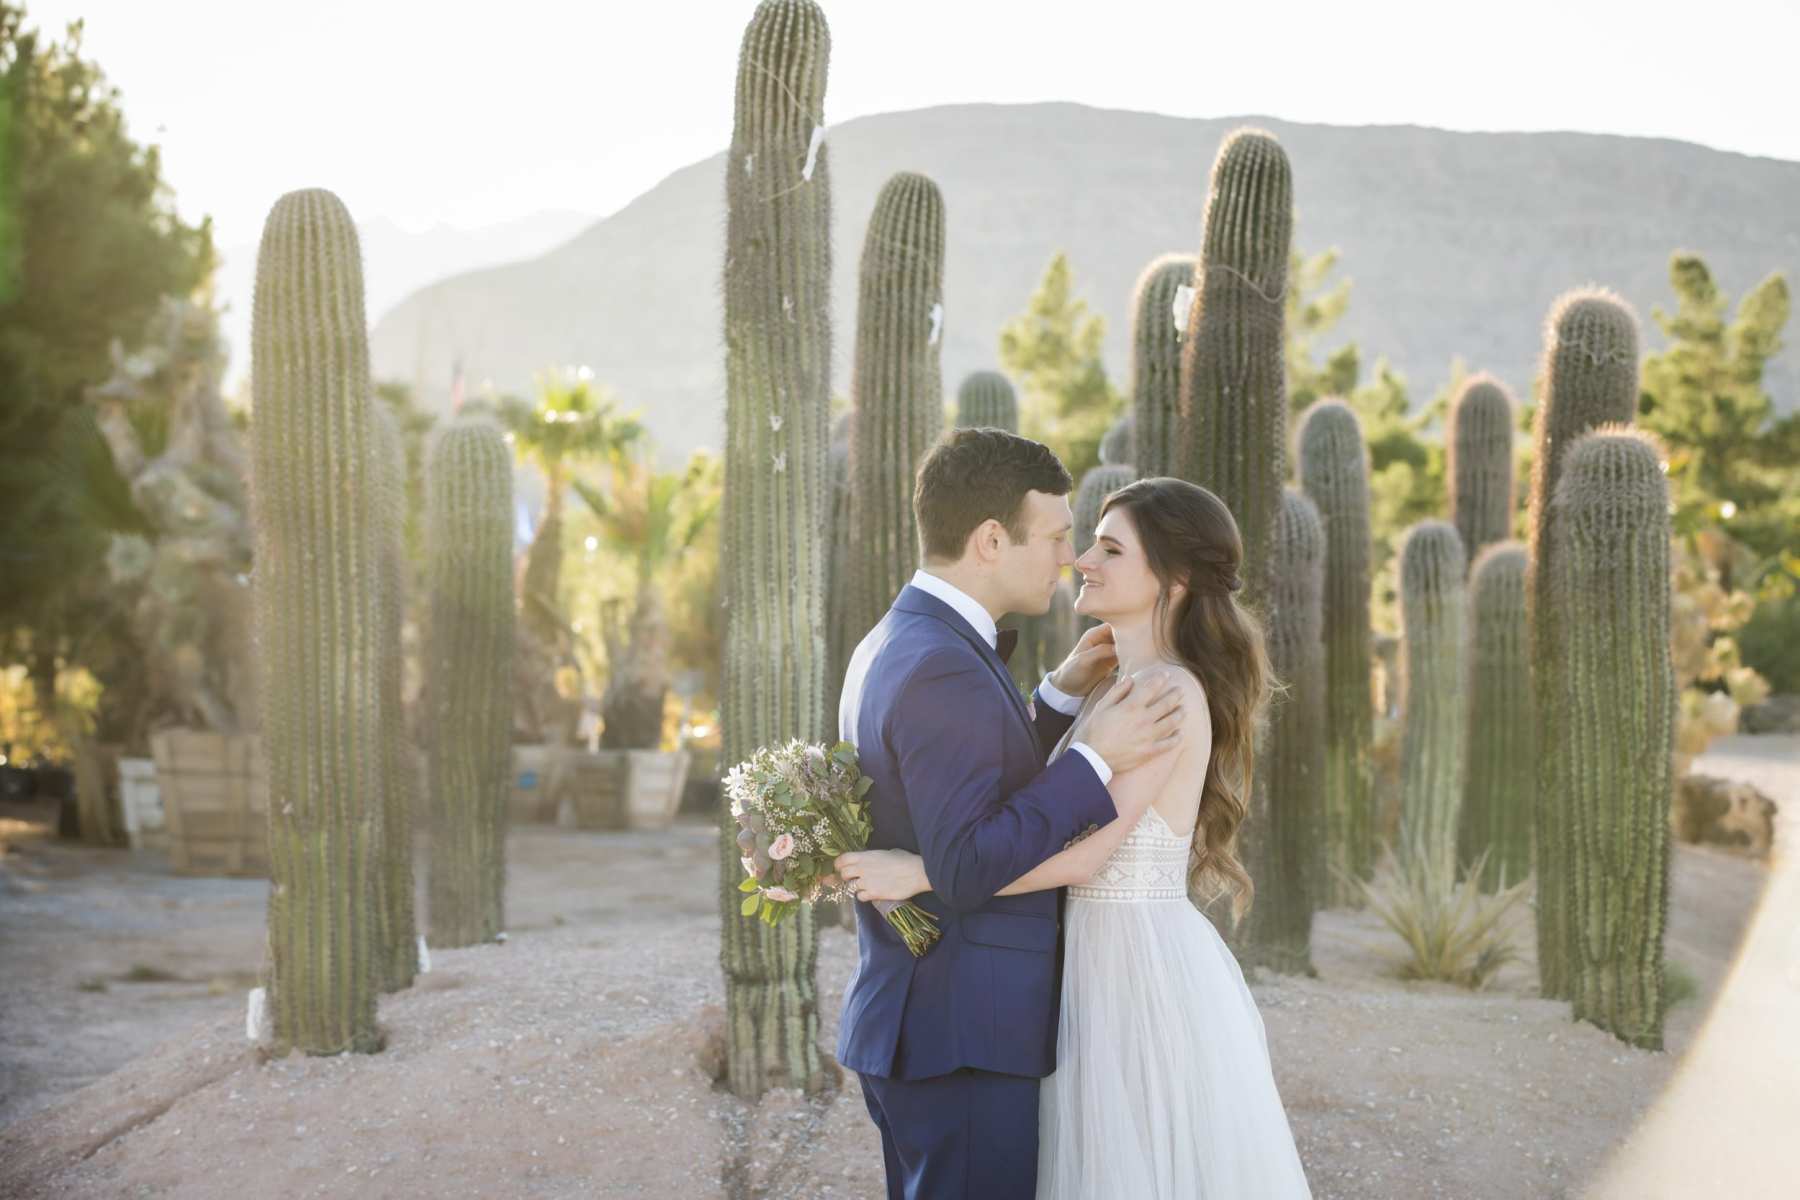 Cactus Joe's Weddings in Las Vegas